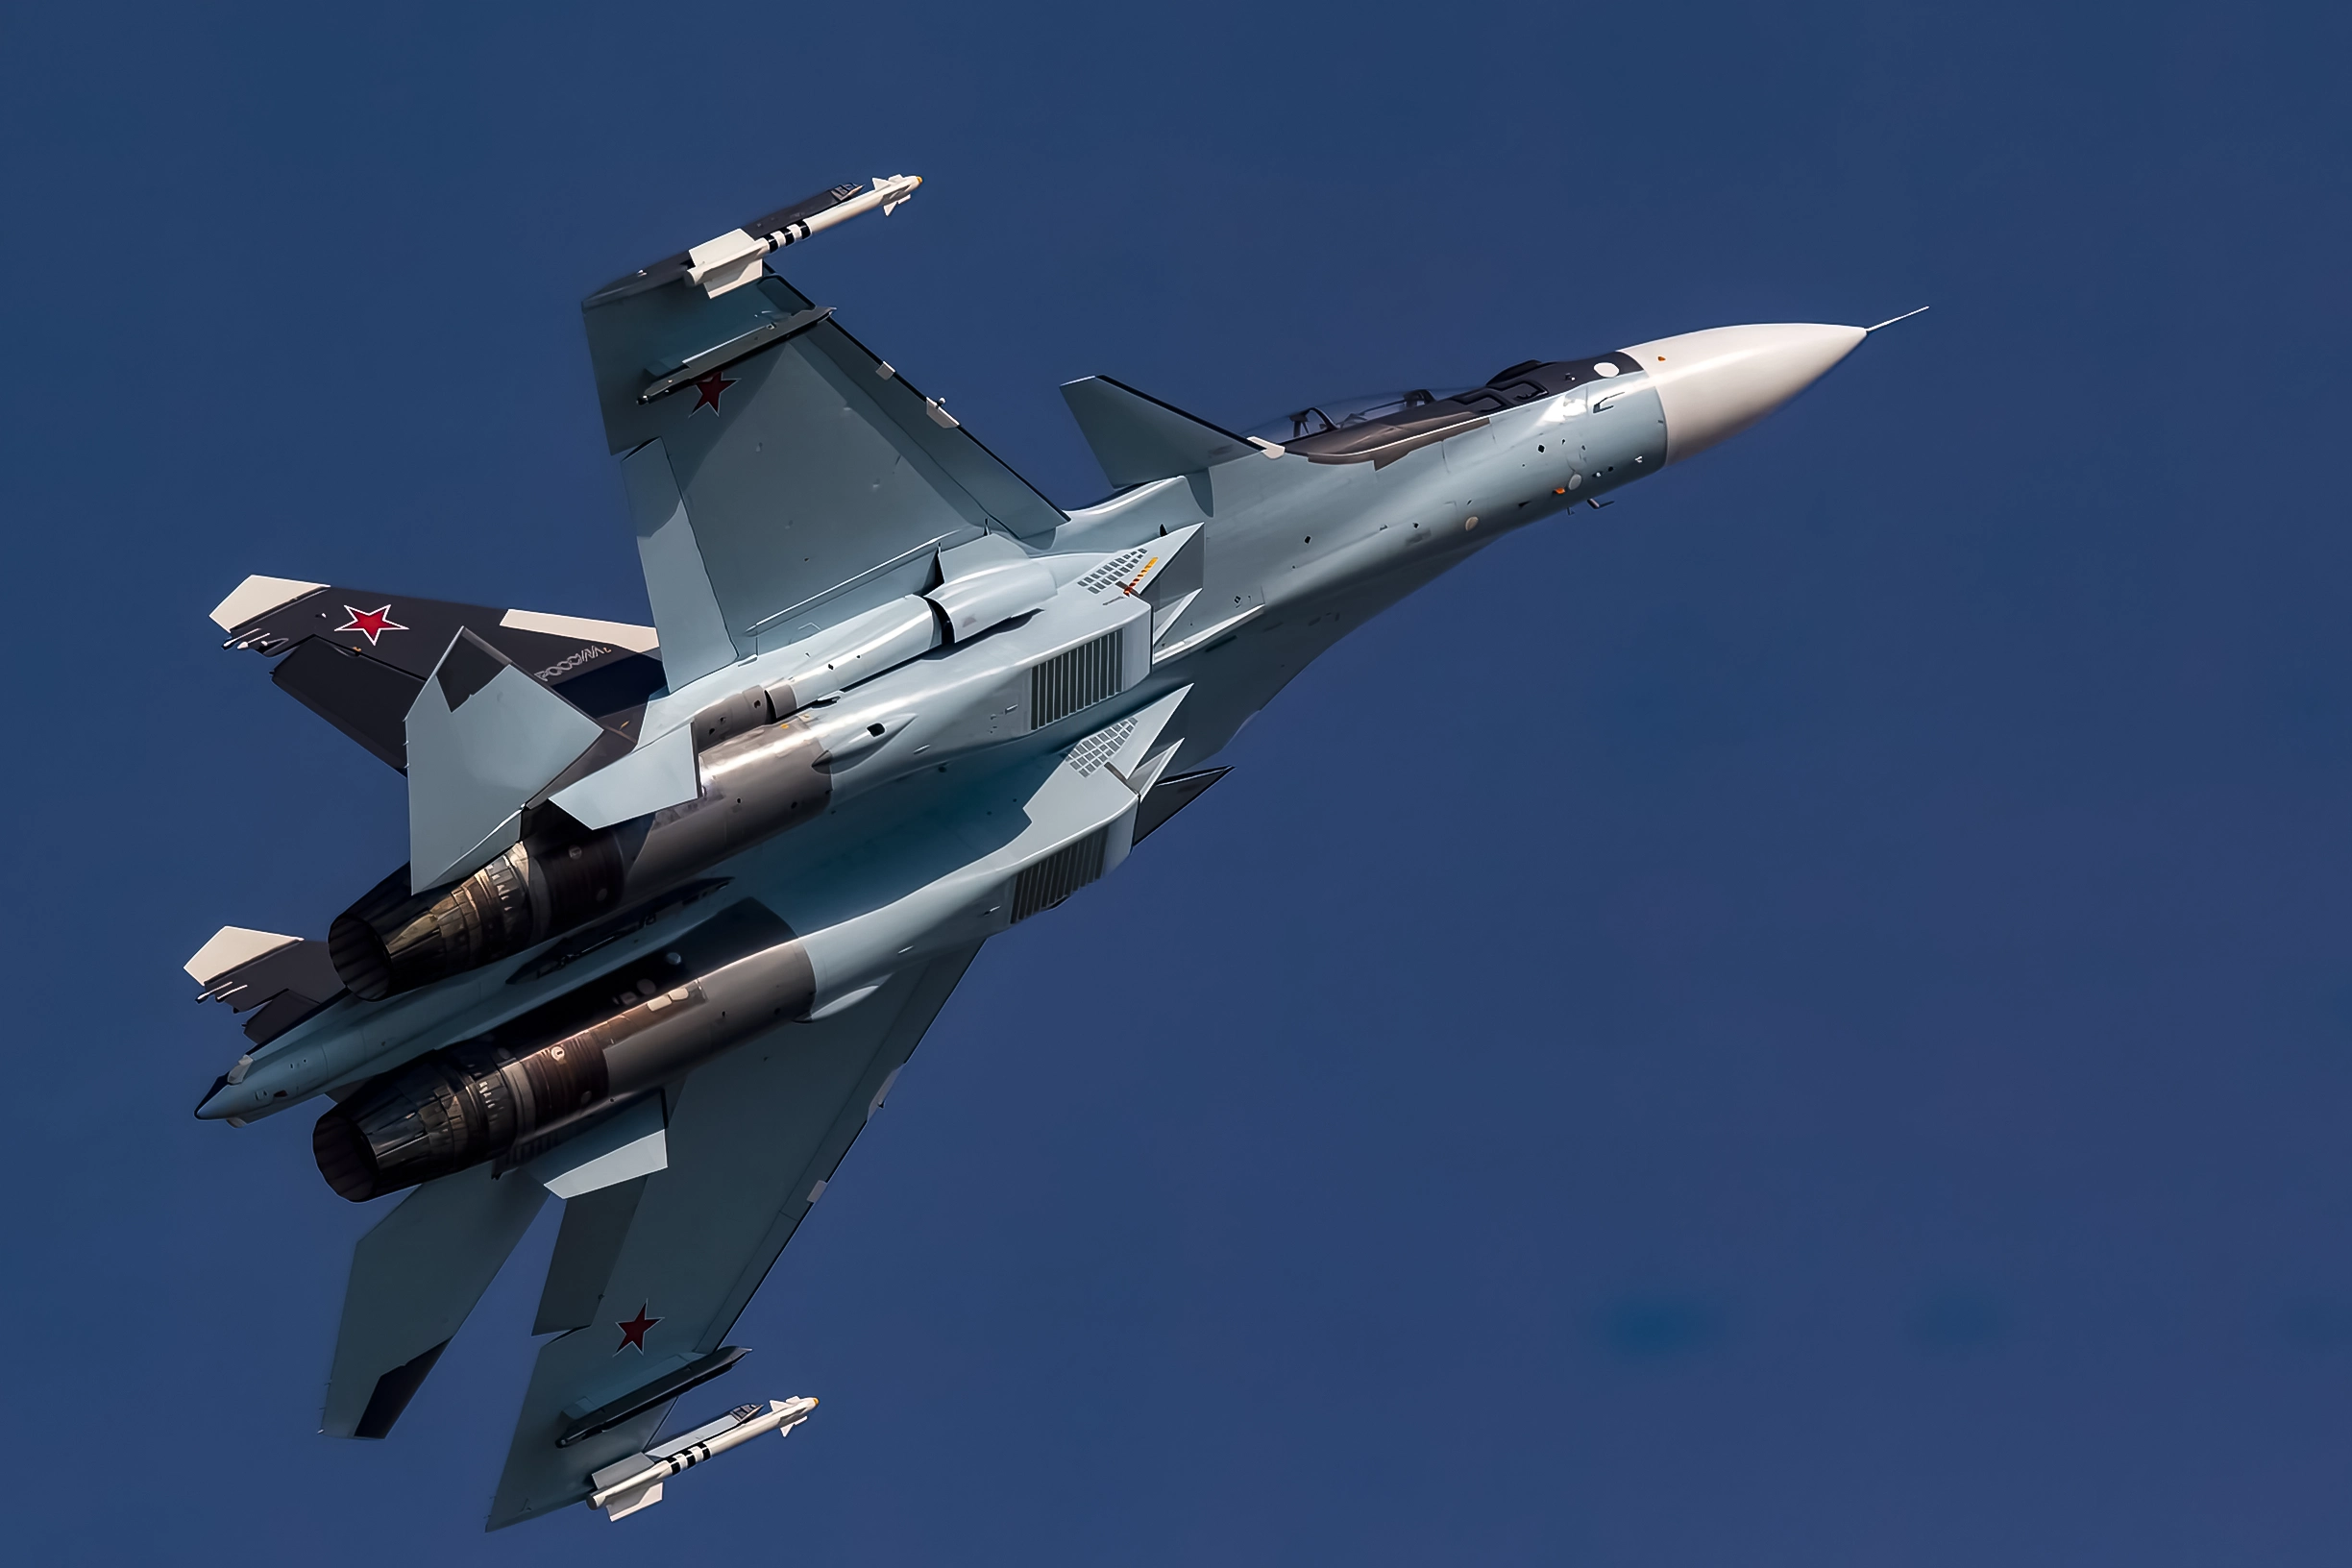 Armado con el misil Kh-31 de “muerte supersónica”, el caza ruso Su-35 destruye una estación de radar S-300